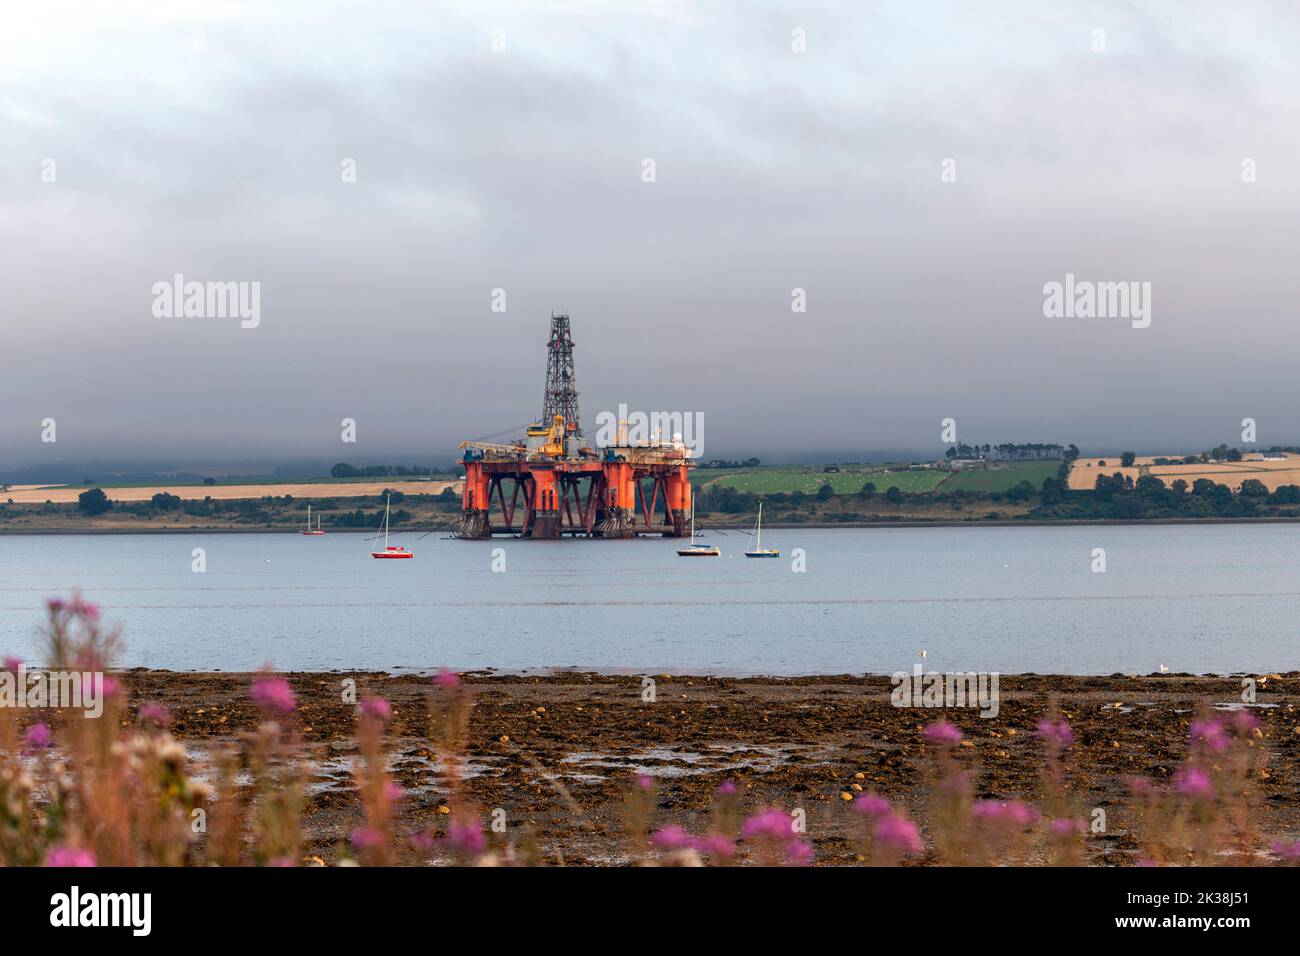 Plataforma petrolífera amarrada en el fiordo de Cromarty, nvergordon, Easter Ross, en Ross y Cromarty, Highland, Escocia, Reino Unido Foto de stock